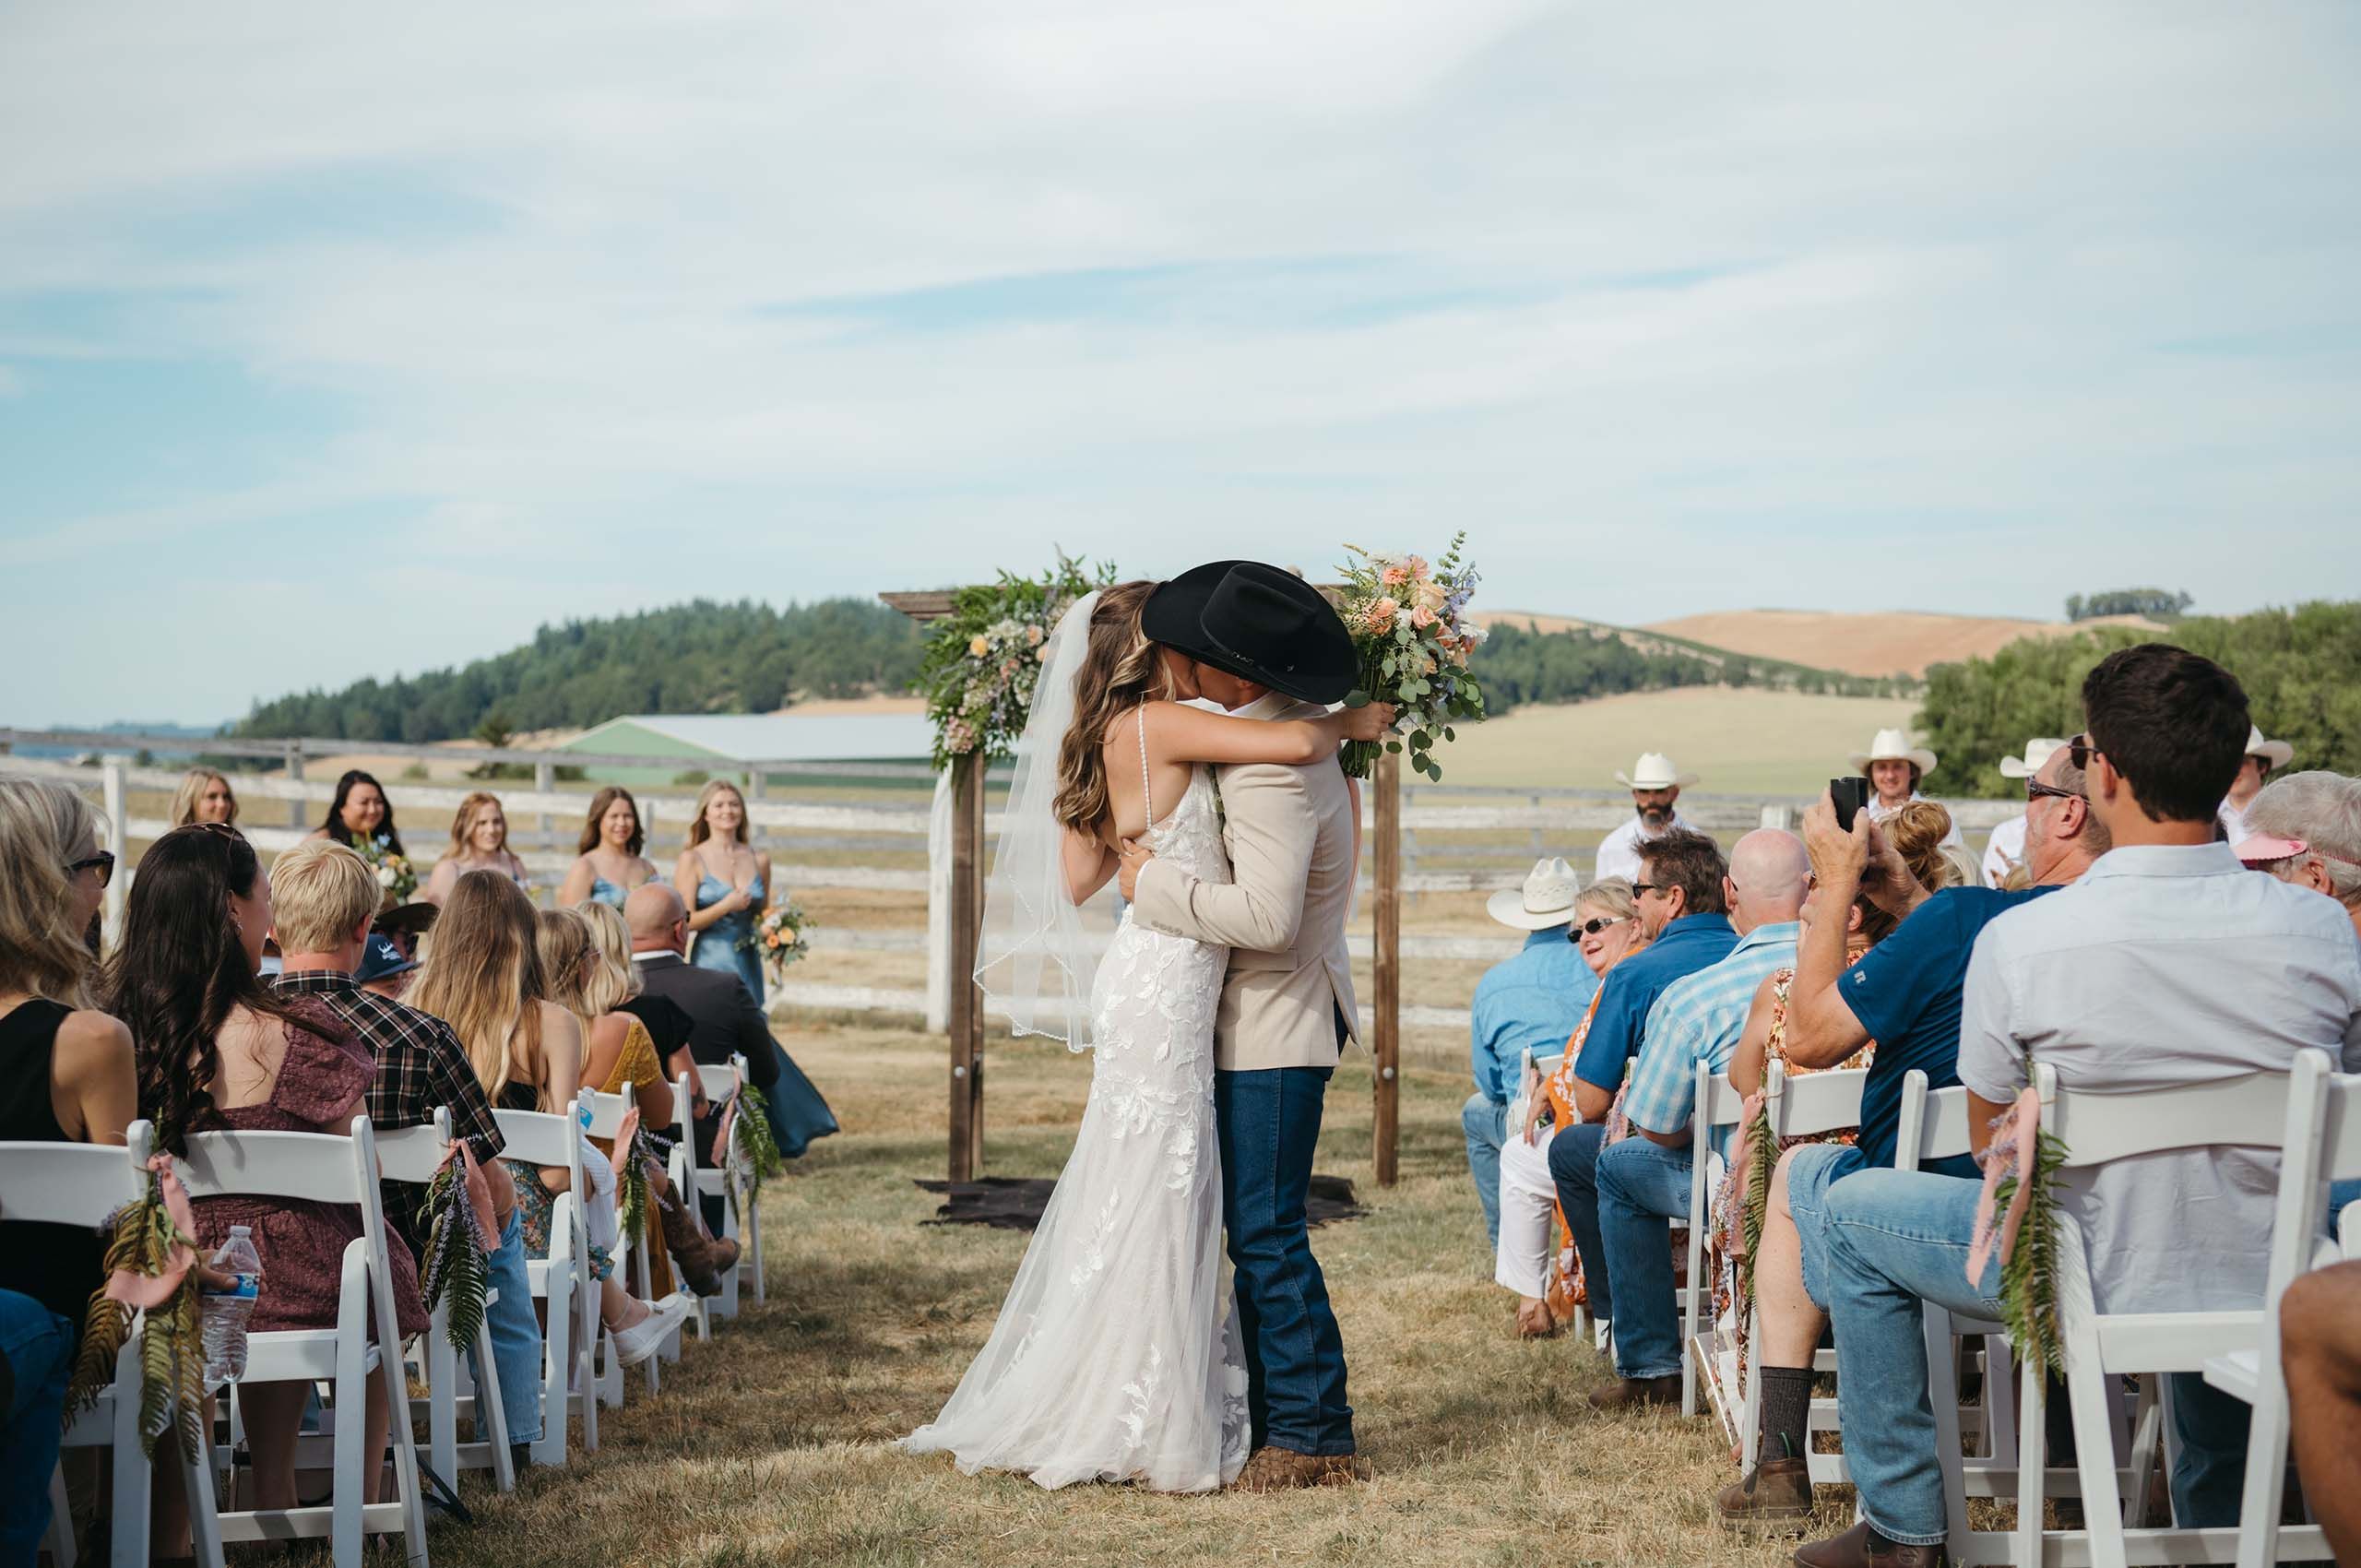 Western wedding ceremony kiss